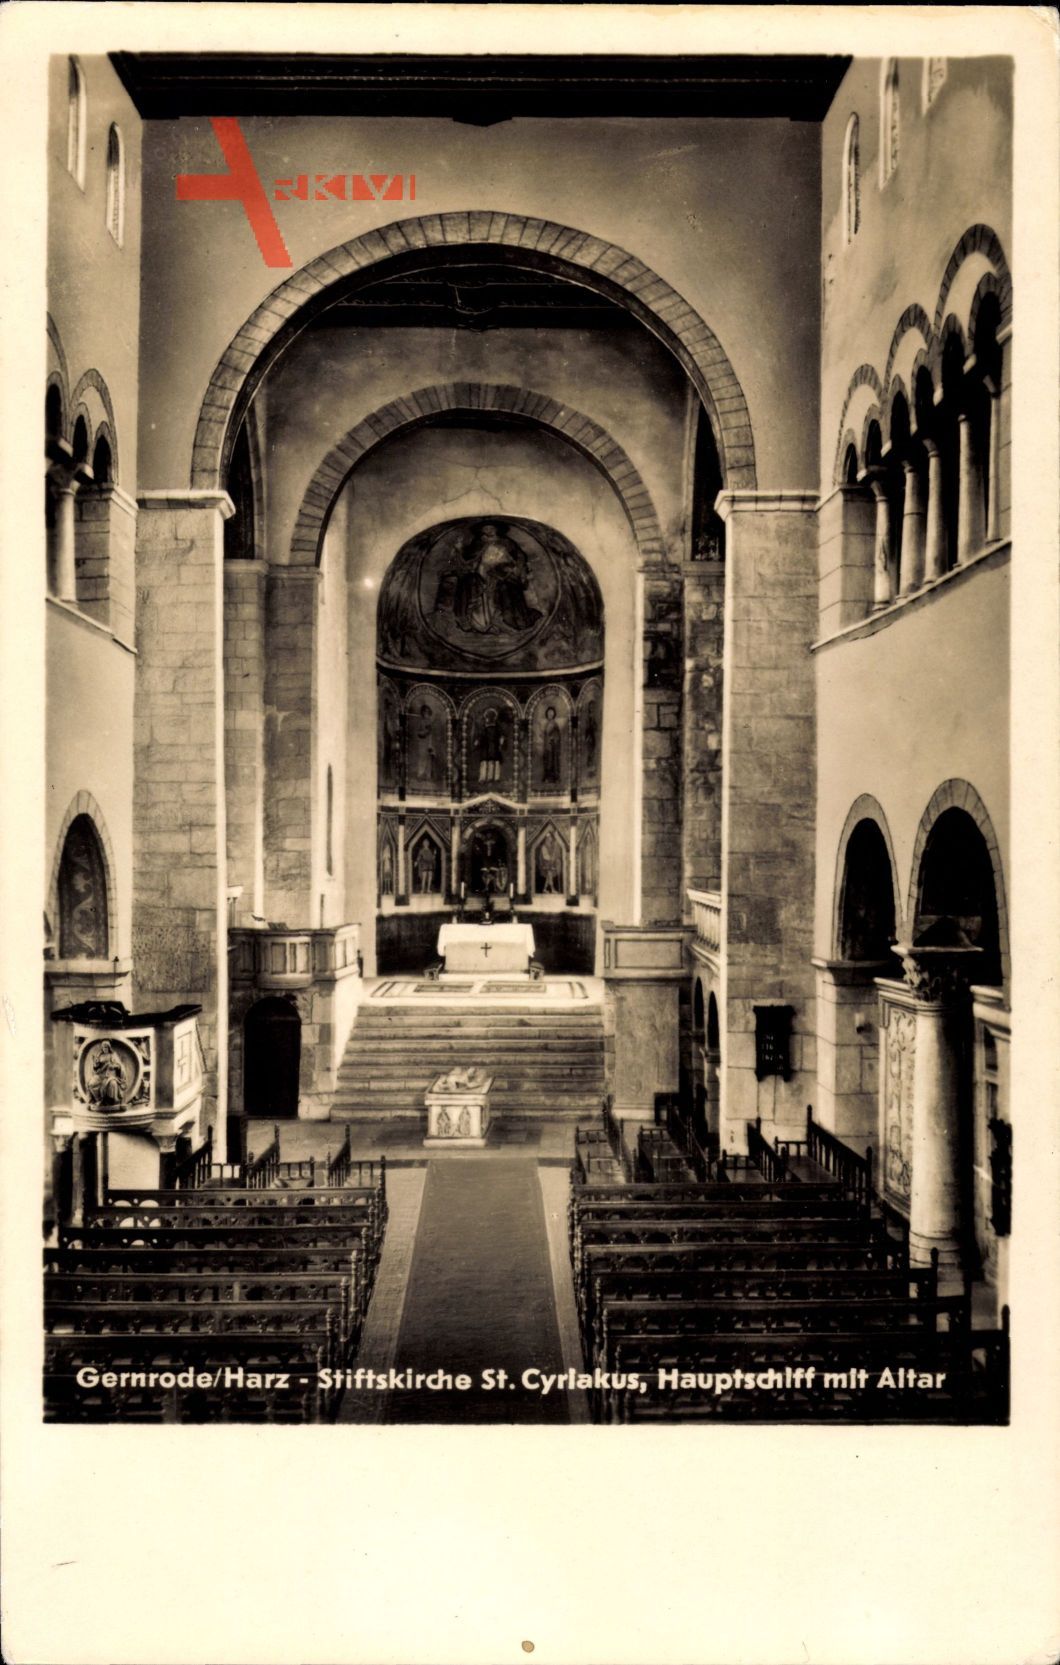 Gernrode im Harz, Stiftskirche St. Cyriakus, Hauptschiff mit Altar, Sarg